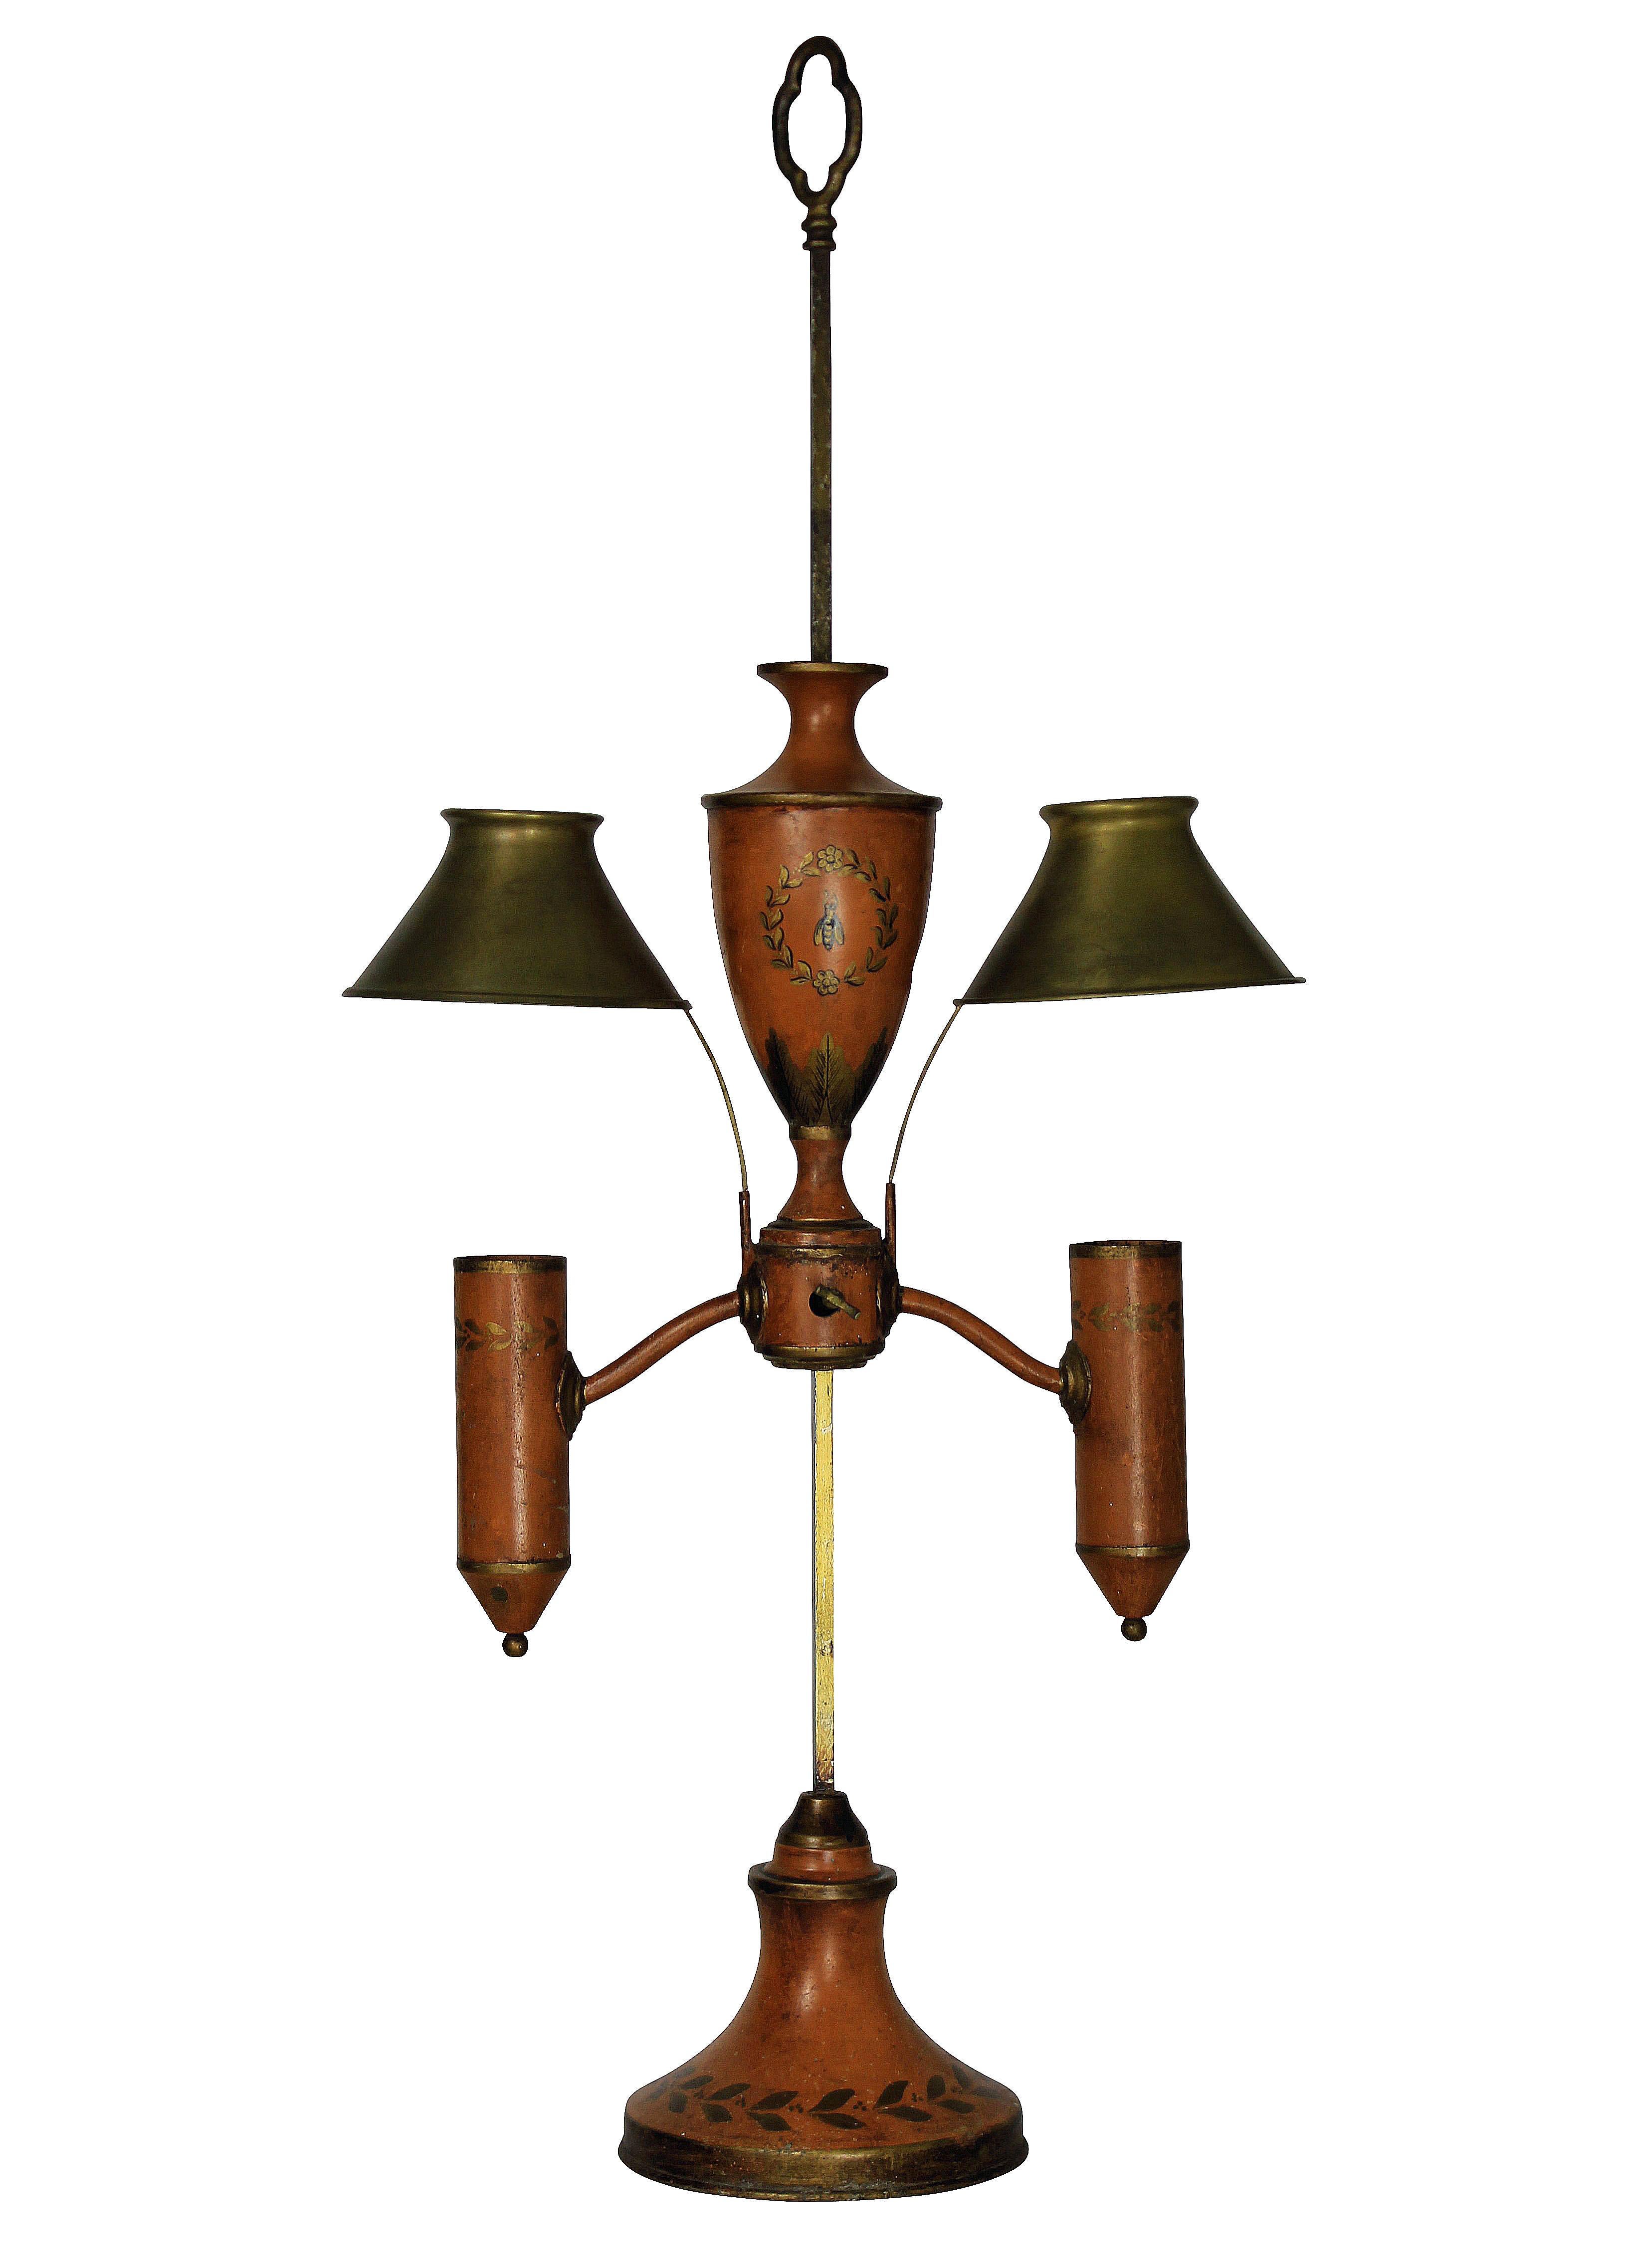 Mid-19th Century Napoleonic Revival Orange Tole Desk Lamp